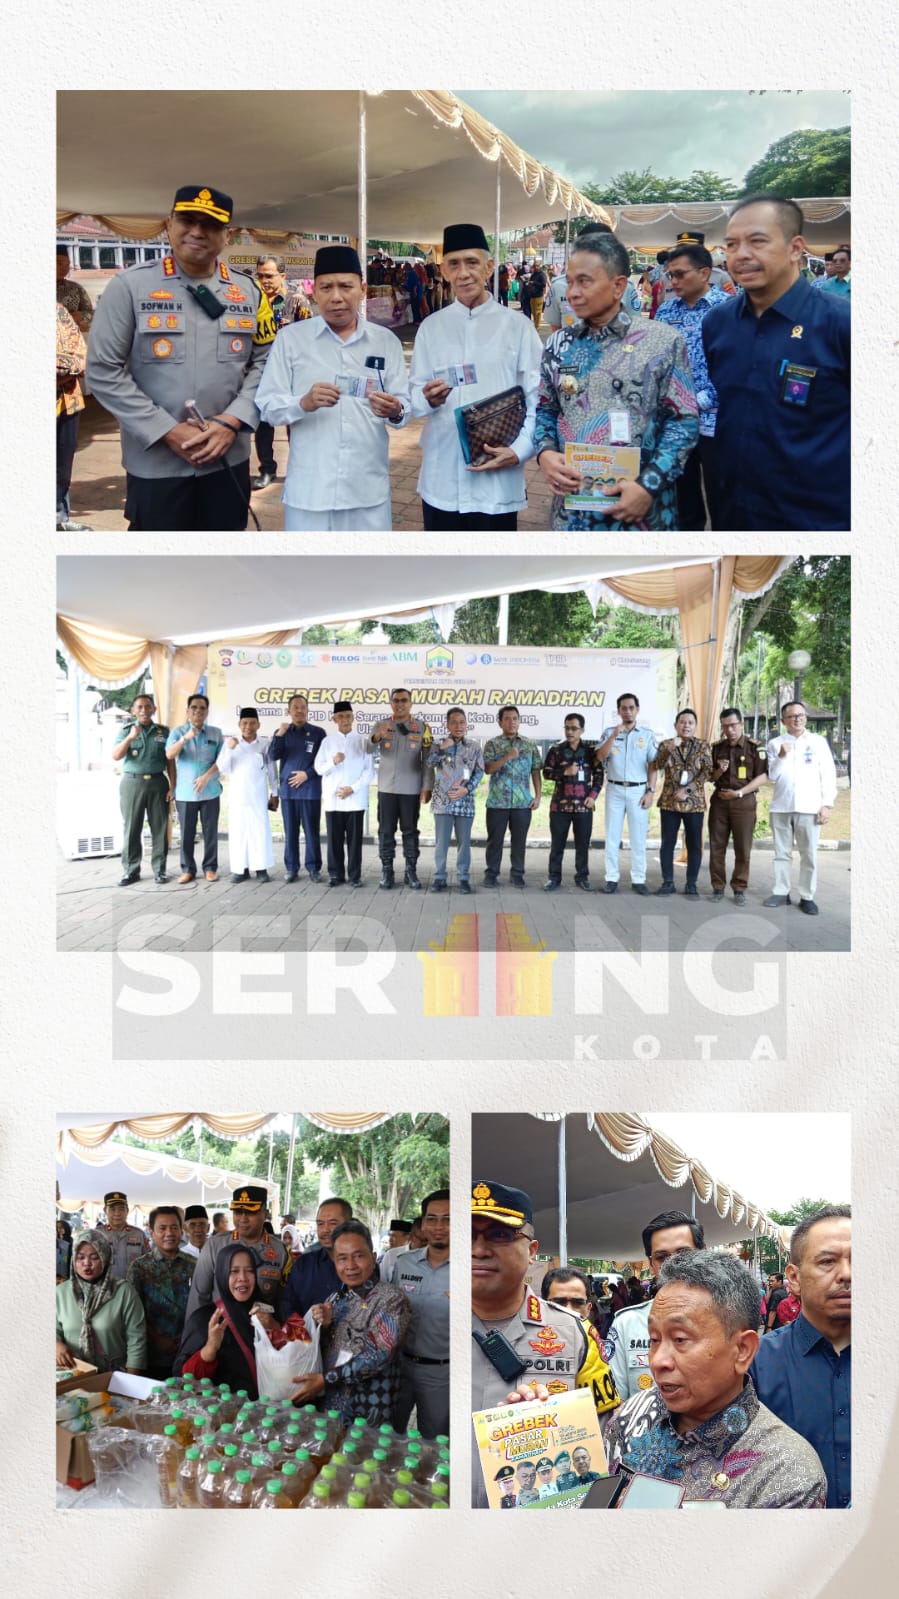 Pemkot Serang bersama TPID, BUMN, BUMD, Ulama dan Pendekar Gelar Grebek Pasar Murah Ramadhan. Pj Walikota: "Saya mengajak kepada BUMN dan BUMD untuk bersama-sama membantu masyarakat Kota Serang"